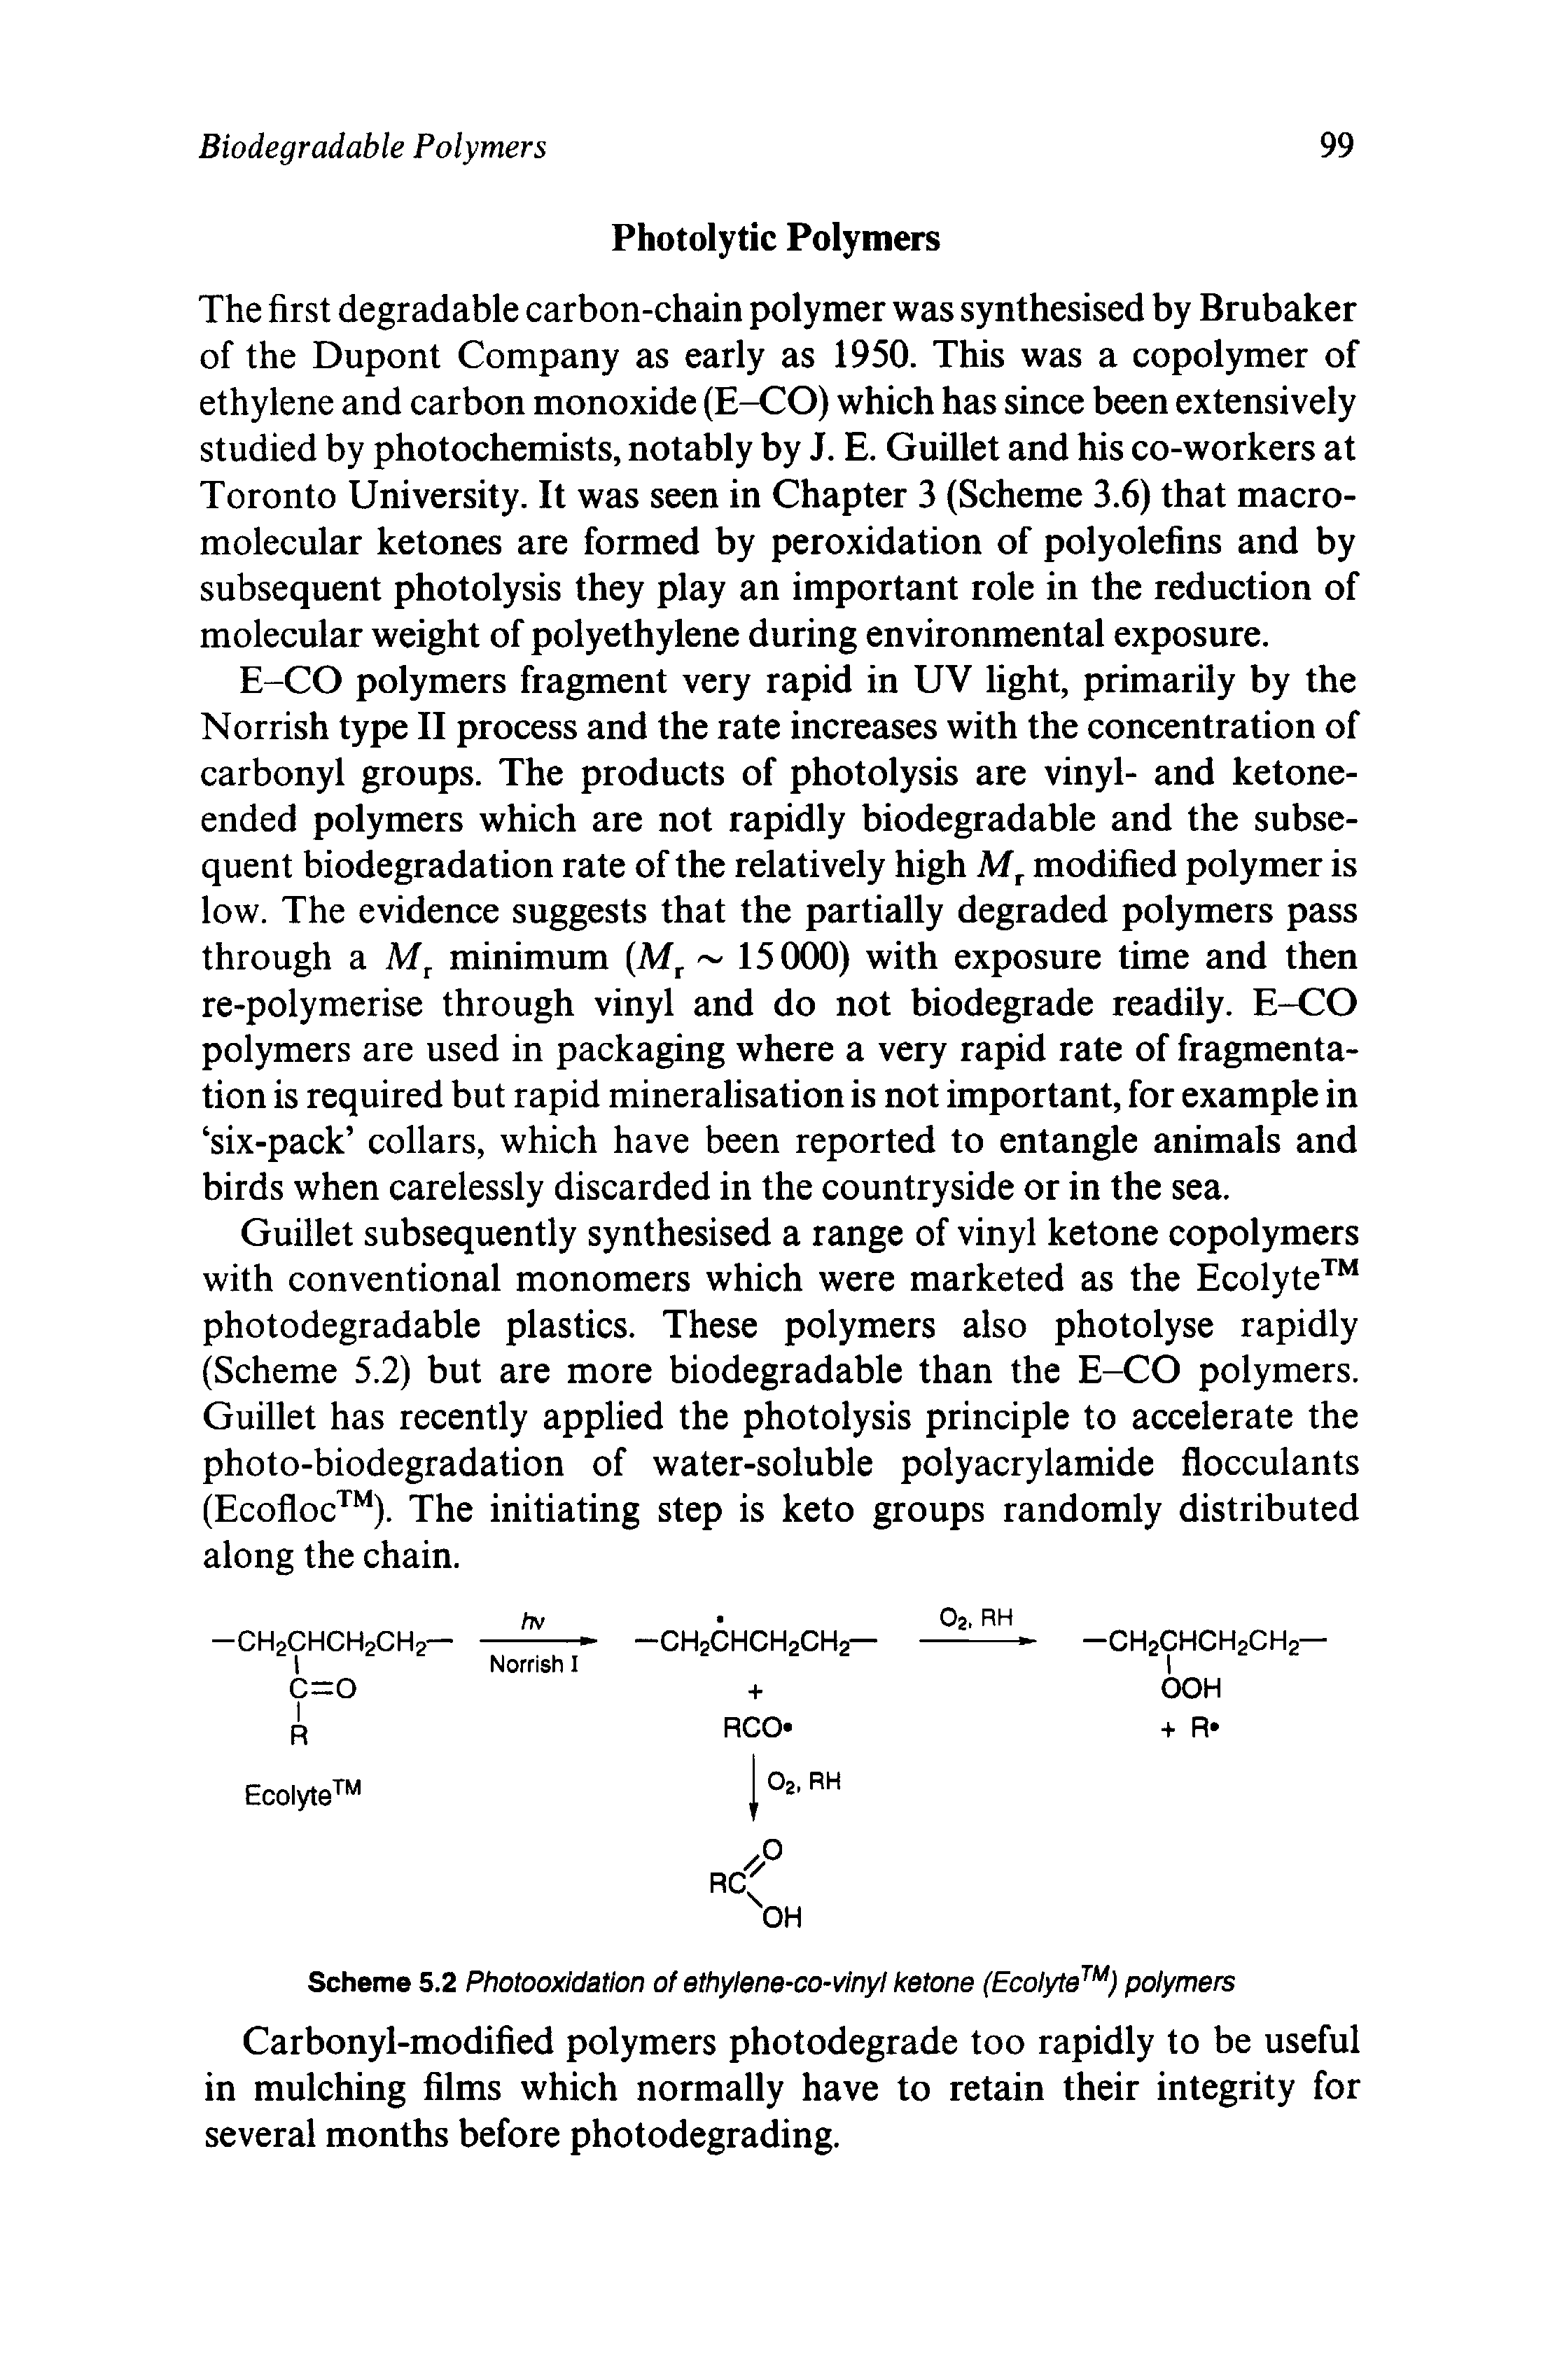 Scheme 5.2 Photooxidation of ethylene-co-vinyl ketone (Ecolyte ) polymers...